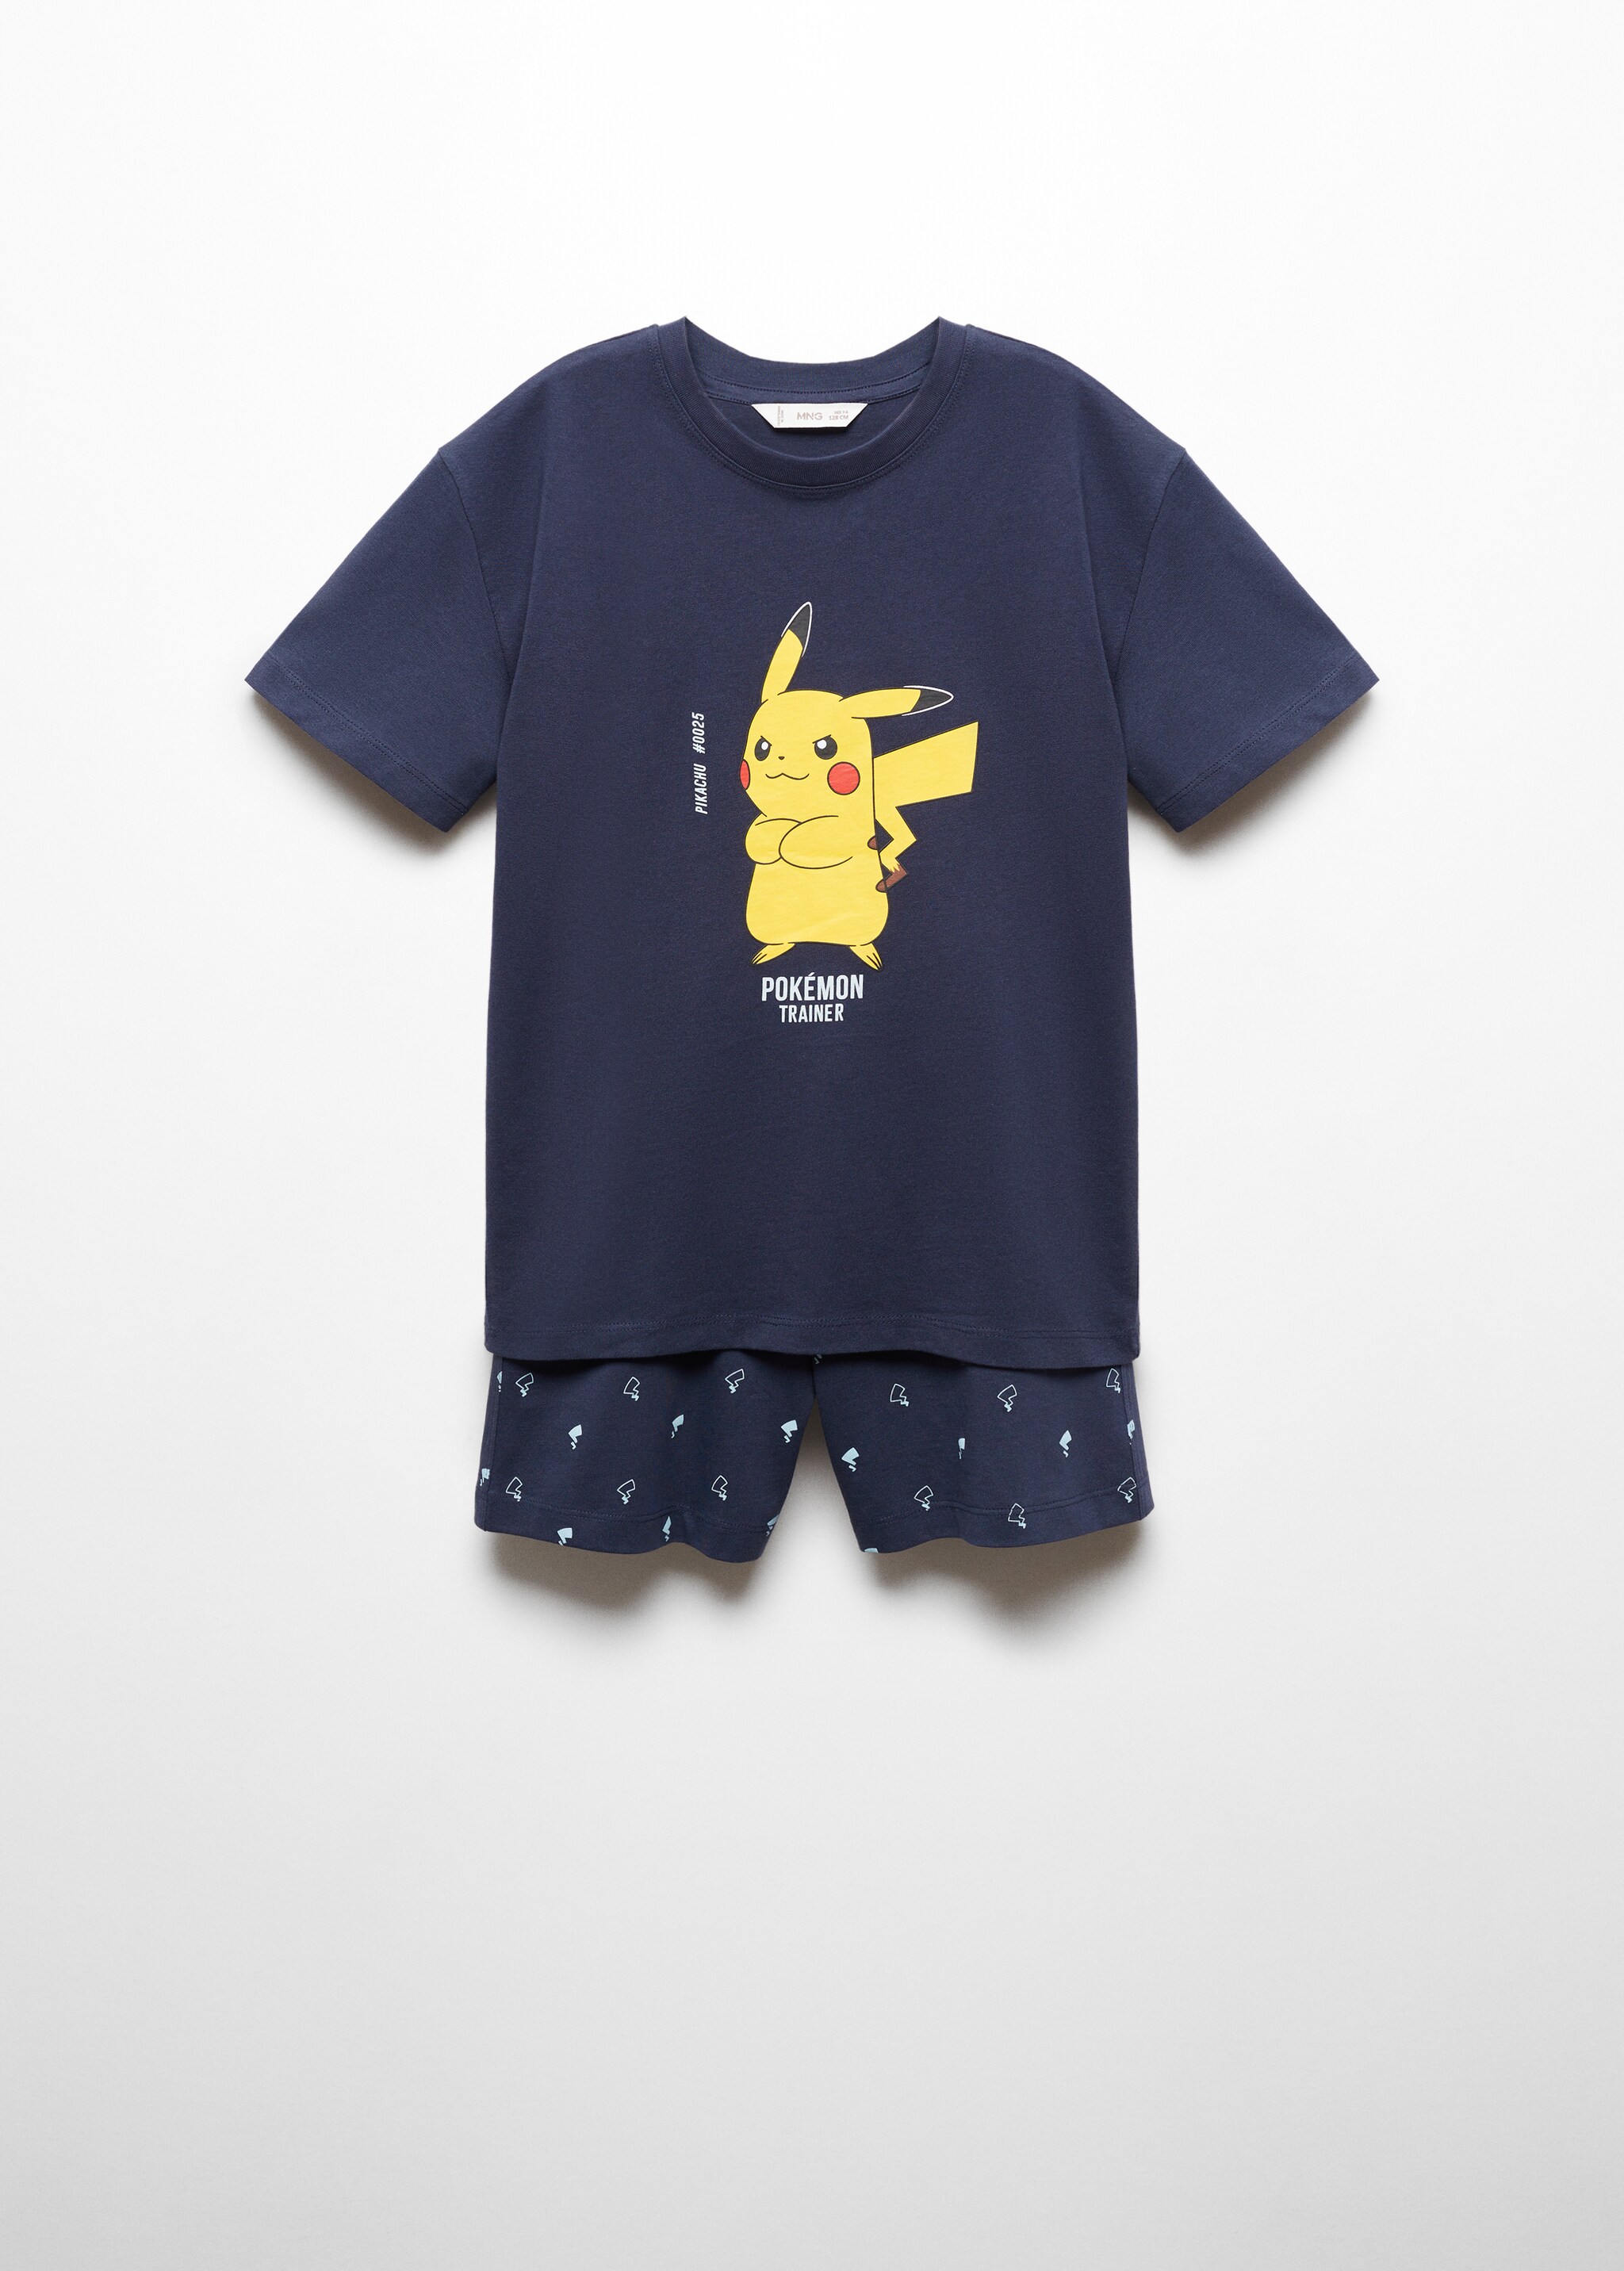 Pijama do Pikachu Pokemon - Artigo sem modelo